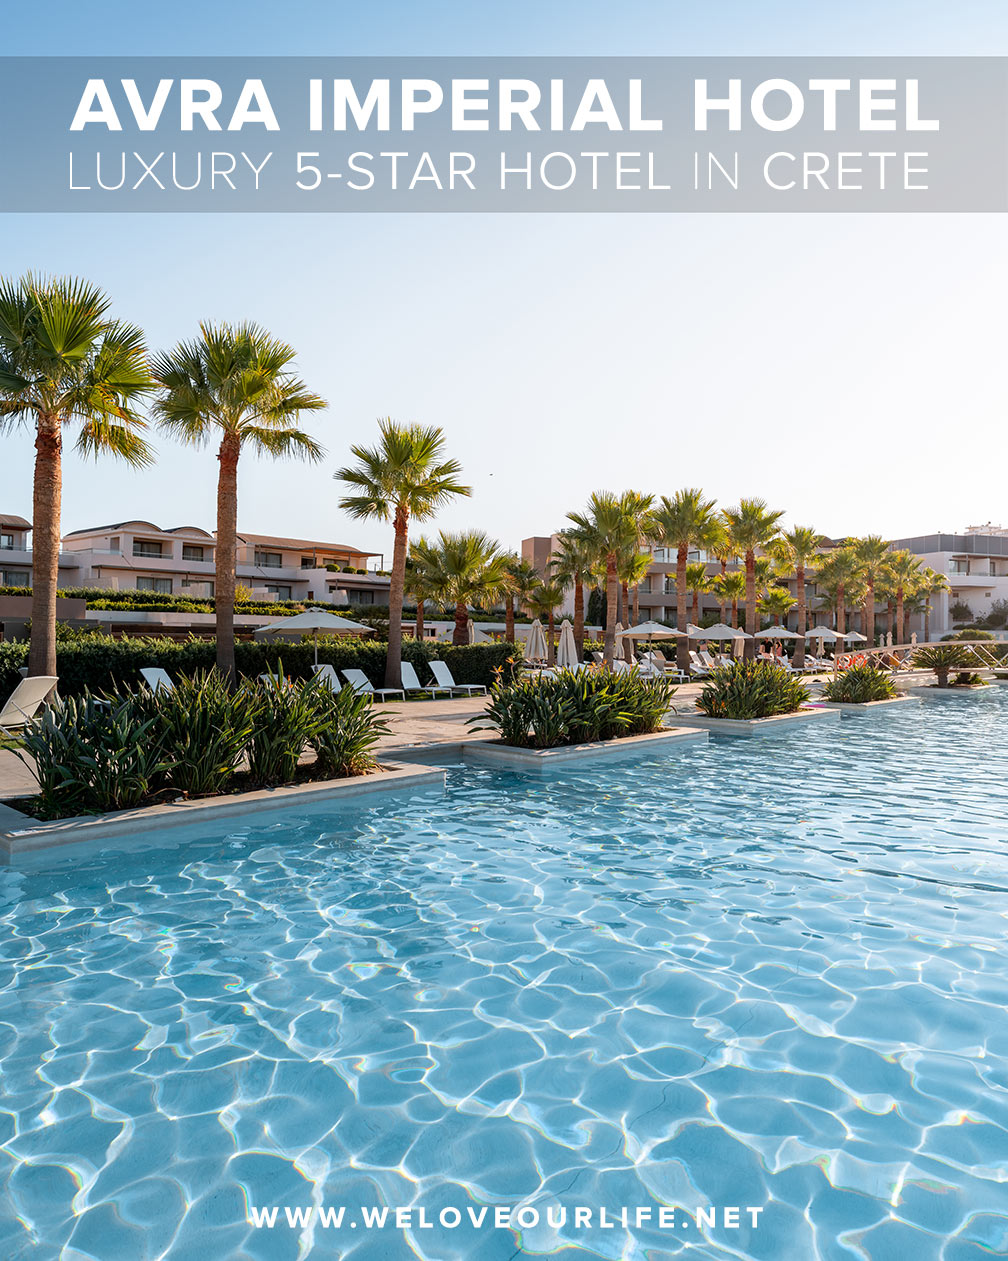 Best Hotels in Greece